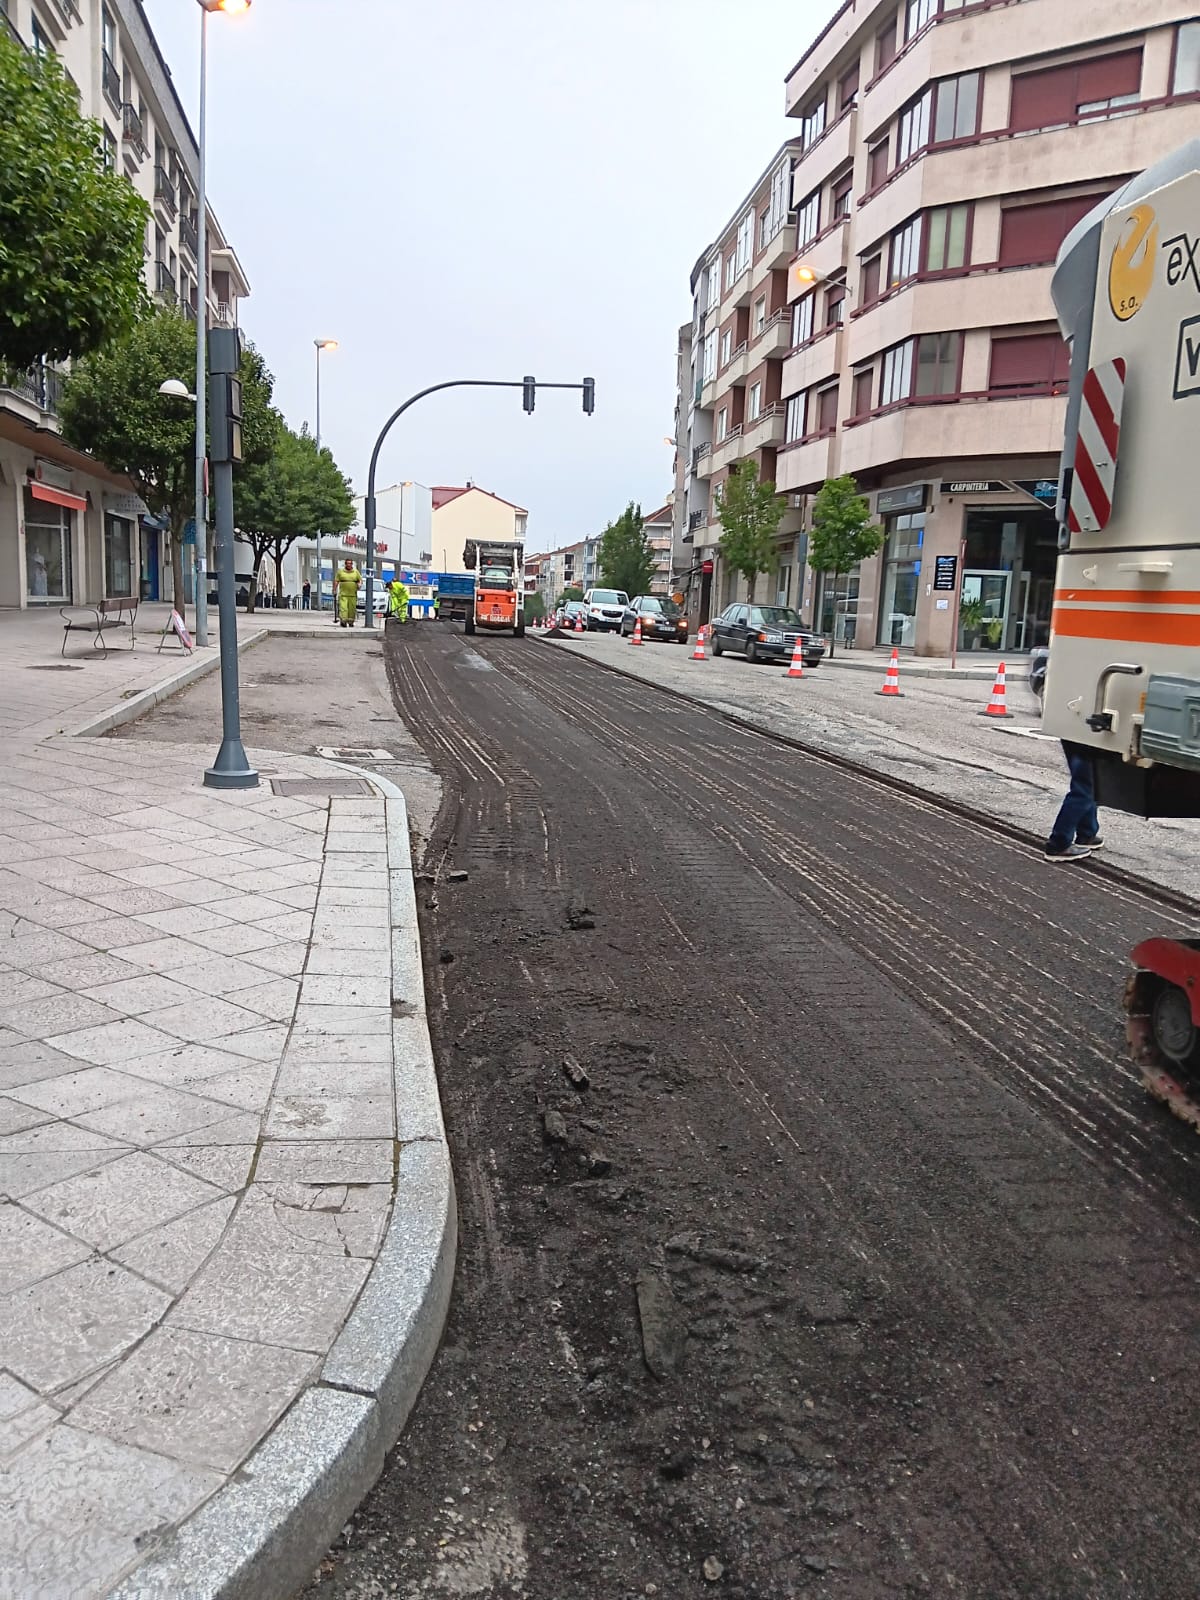 Image 3 of article A Xunta inicia as obras de reforzo do firme na Avenida de Zamora, no Concello de Ourense